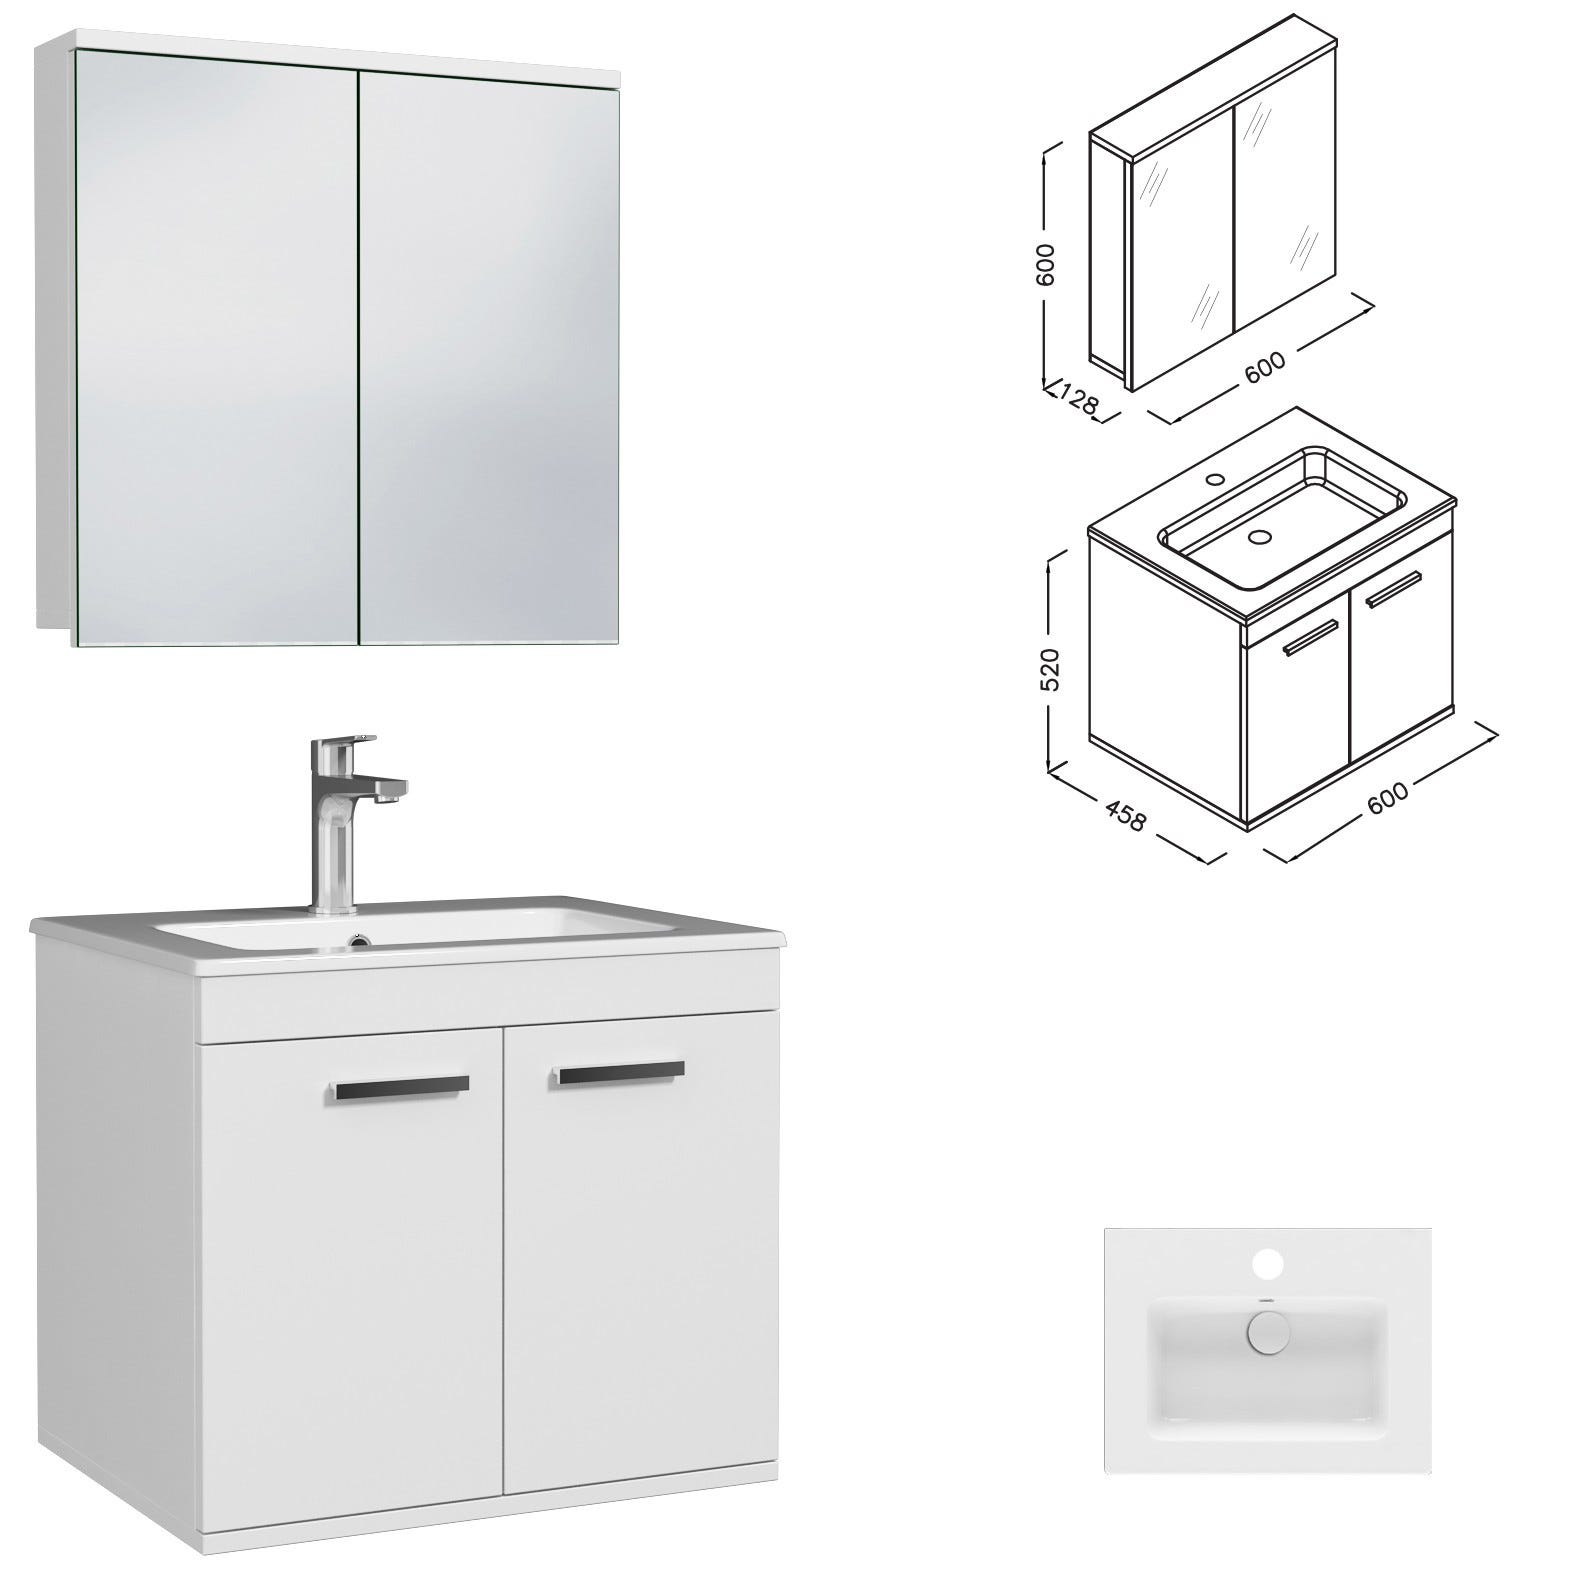 RUBITE Meuble salle de bain simple vasque 2 portes blanc largeur 60 cm + miroir armoire 2